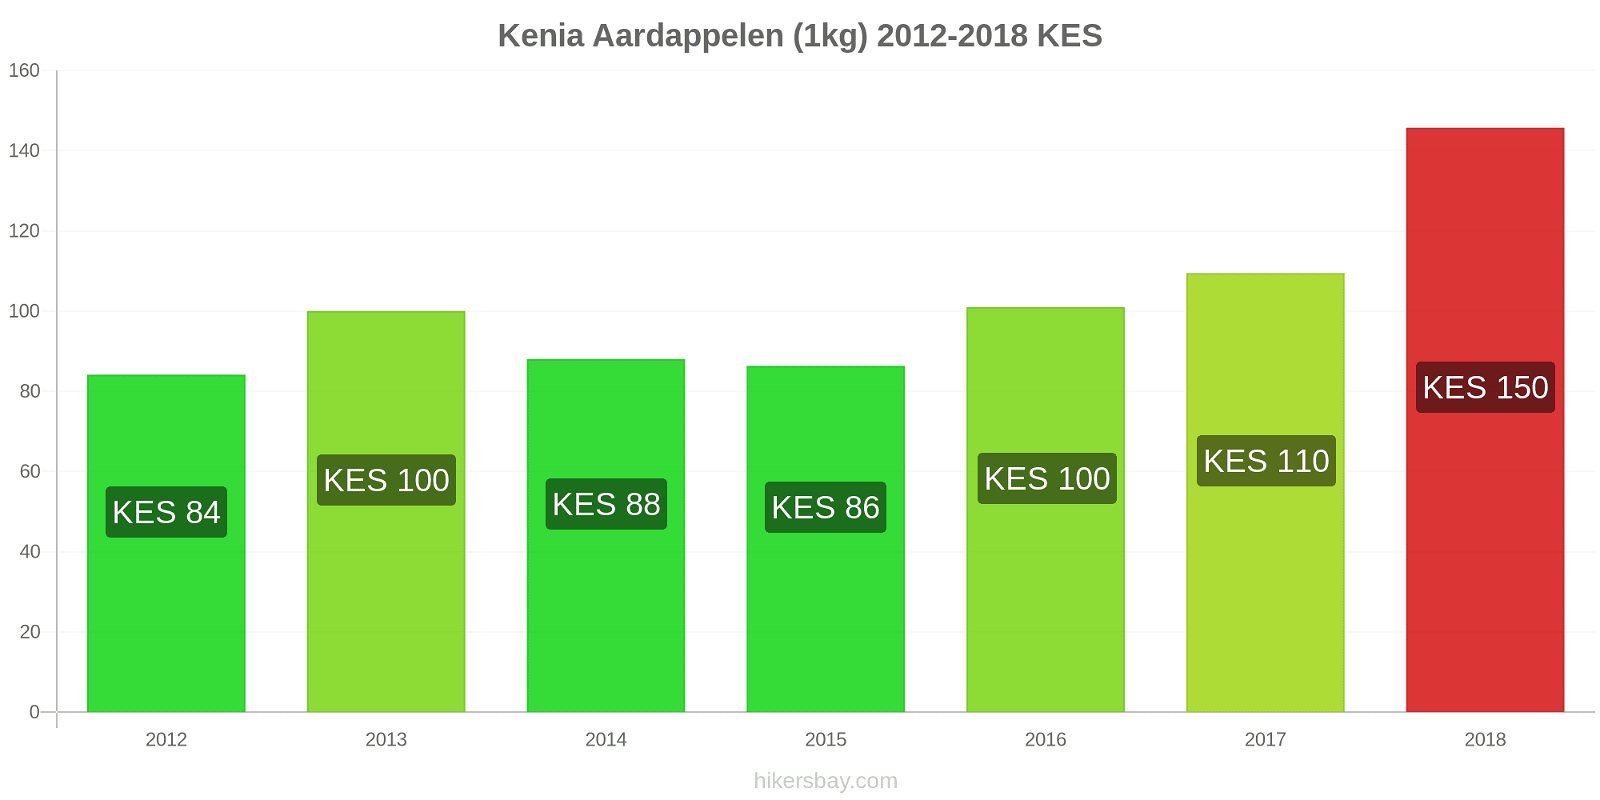 Kenia prijswijzigingen Aardappelen (1kg) hikersbay.com